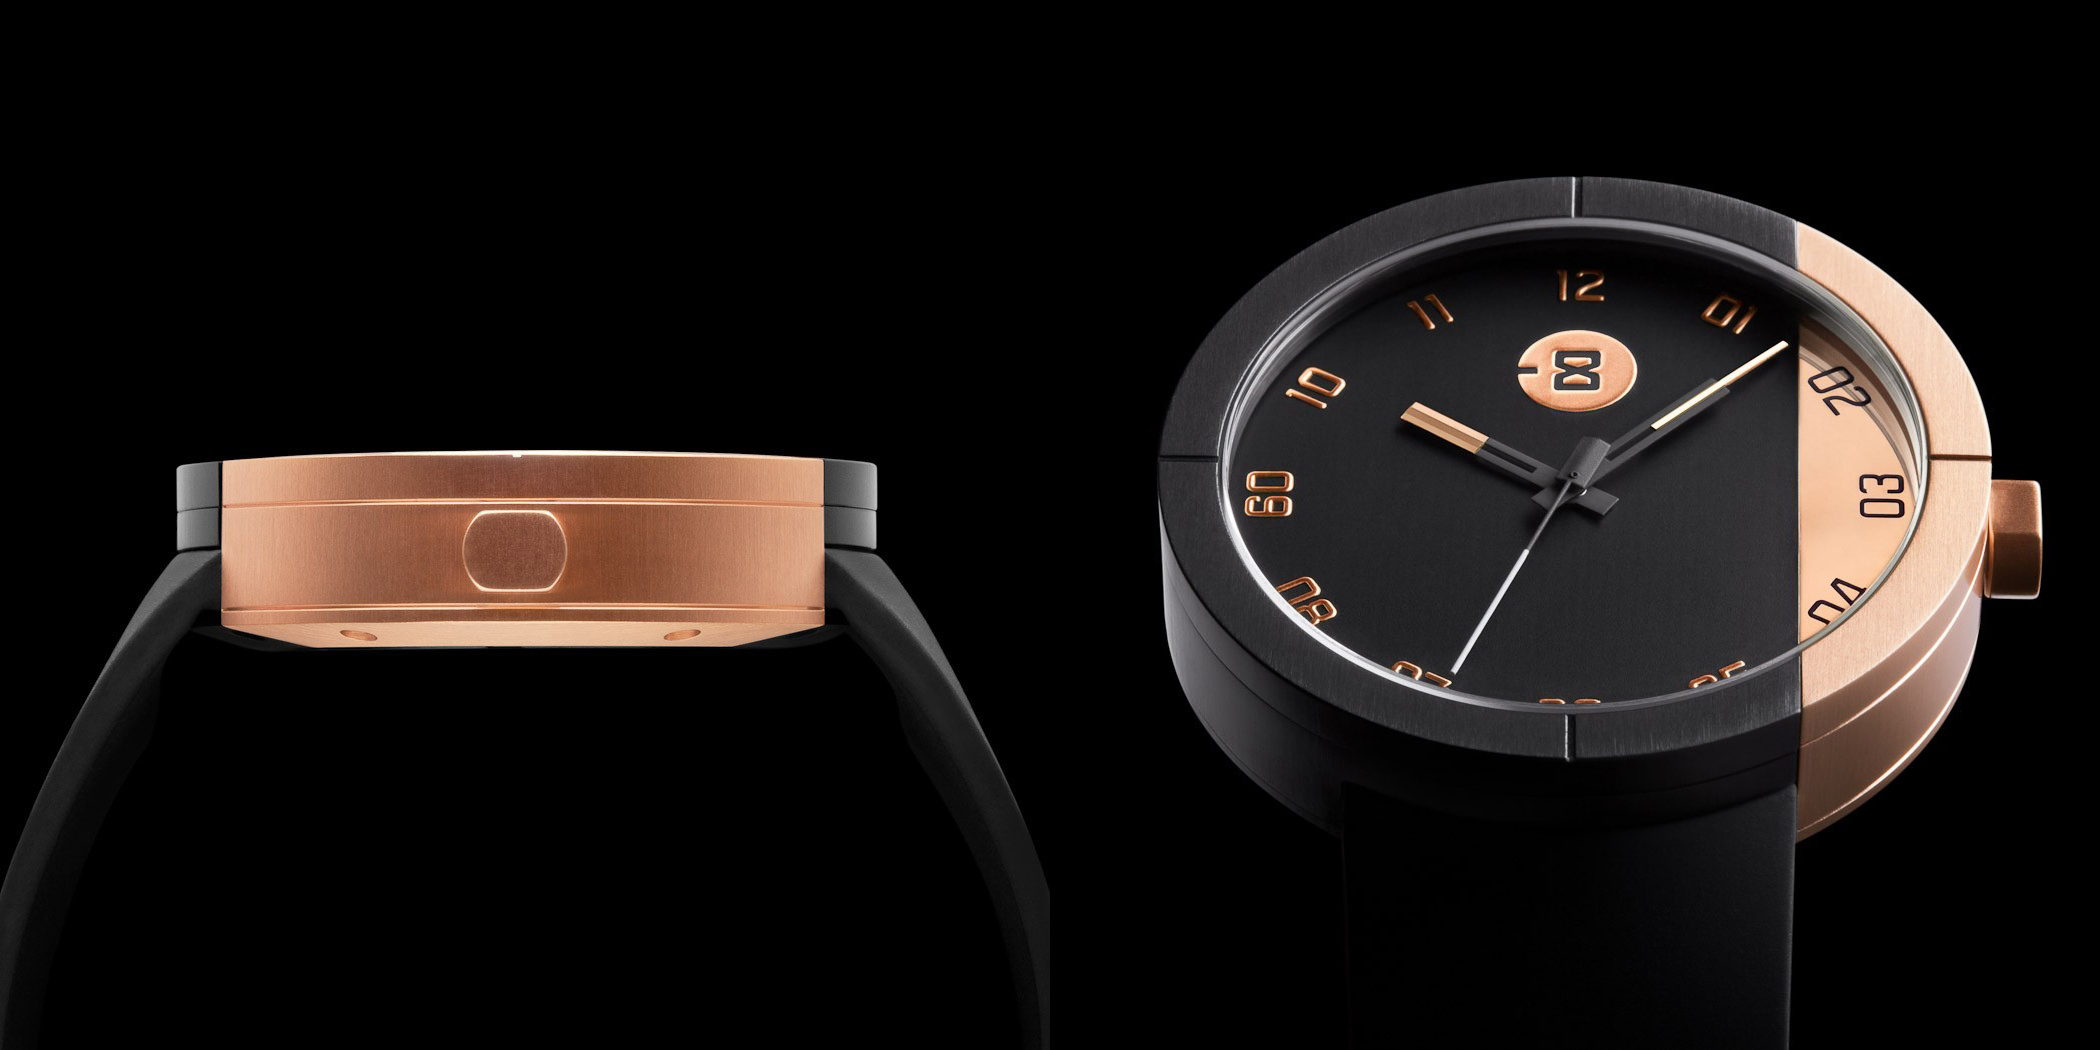 MInus 8 Watches - Astro Design/Minus 8